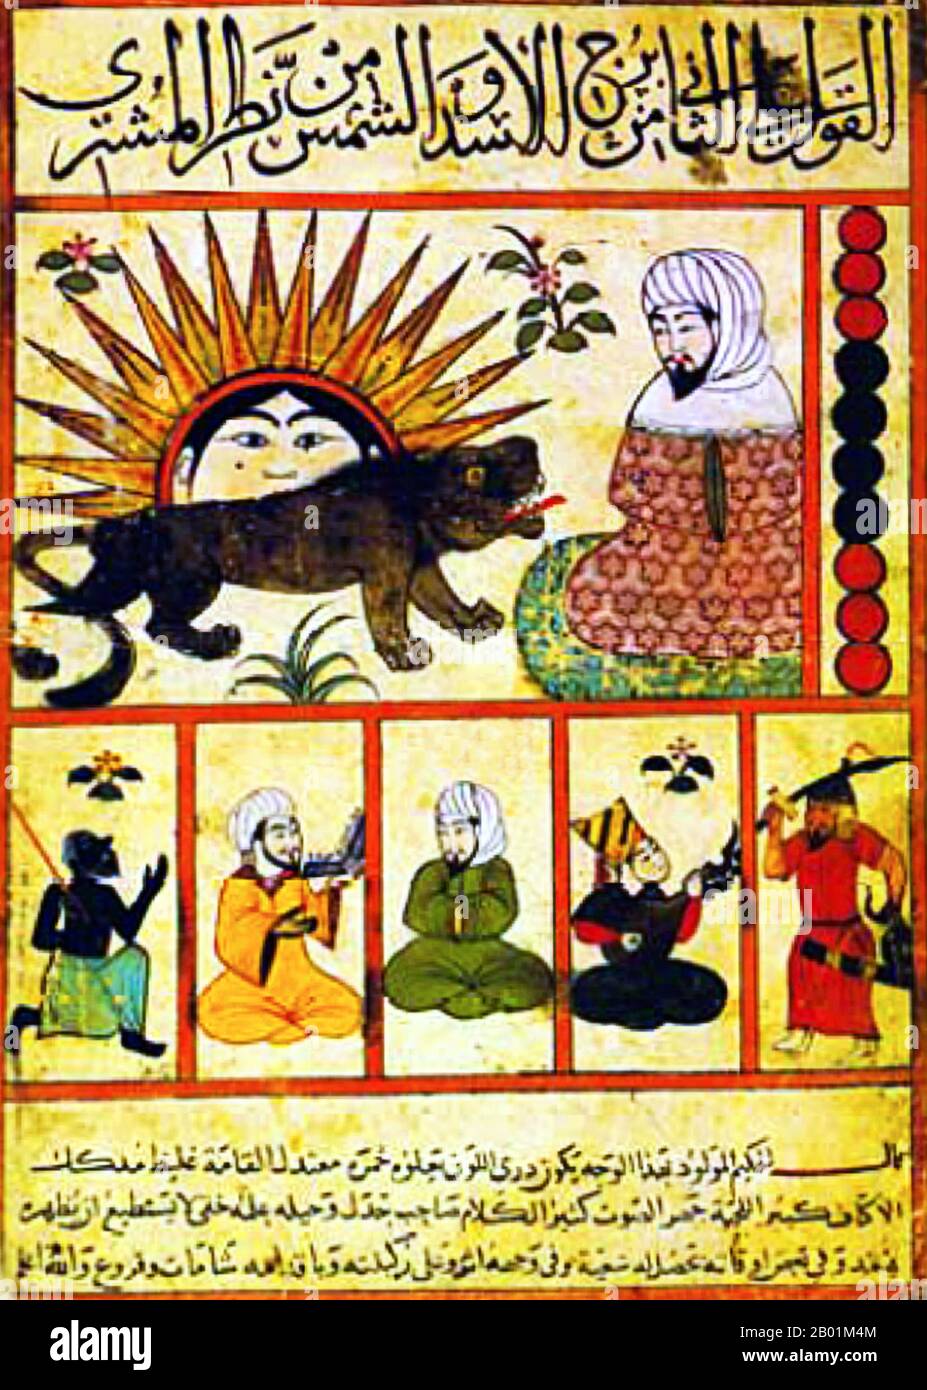 Egitto: Simboli del sole e del leone da una riproduzione egiziana del trattato astrologico "Kitab al-Mawalid (il Libro delle Natività)" di Abu Ma'shar Ibn Balkhi (10 agosto 787 - 9 marzo 886), XV secolo. Abū Ma'shar, Ja'far ibn Muḥammad al-Balkhī (noto anche come al-Falakī o Ibn Balkhī, latinizzato come Albumasar, Albusar o Albuxar) è stato un astrologo persiano, astronomo e filosofo islamico, ritenuto il più grande astrologo della corte abbaside di Baghdad. Non era un grande innovatore, e le sue opere sono libri pratici per la formazione degli astrologi. Foto Stock